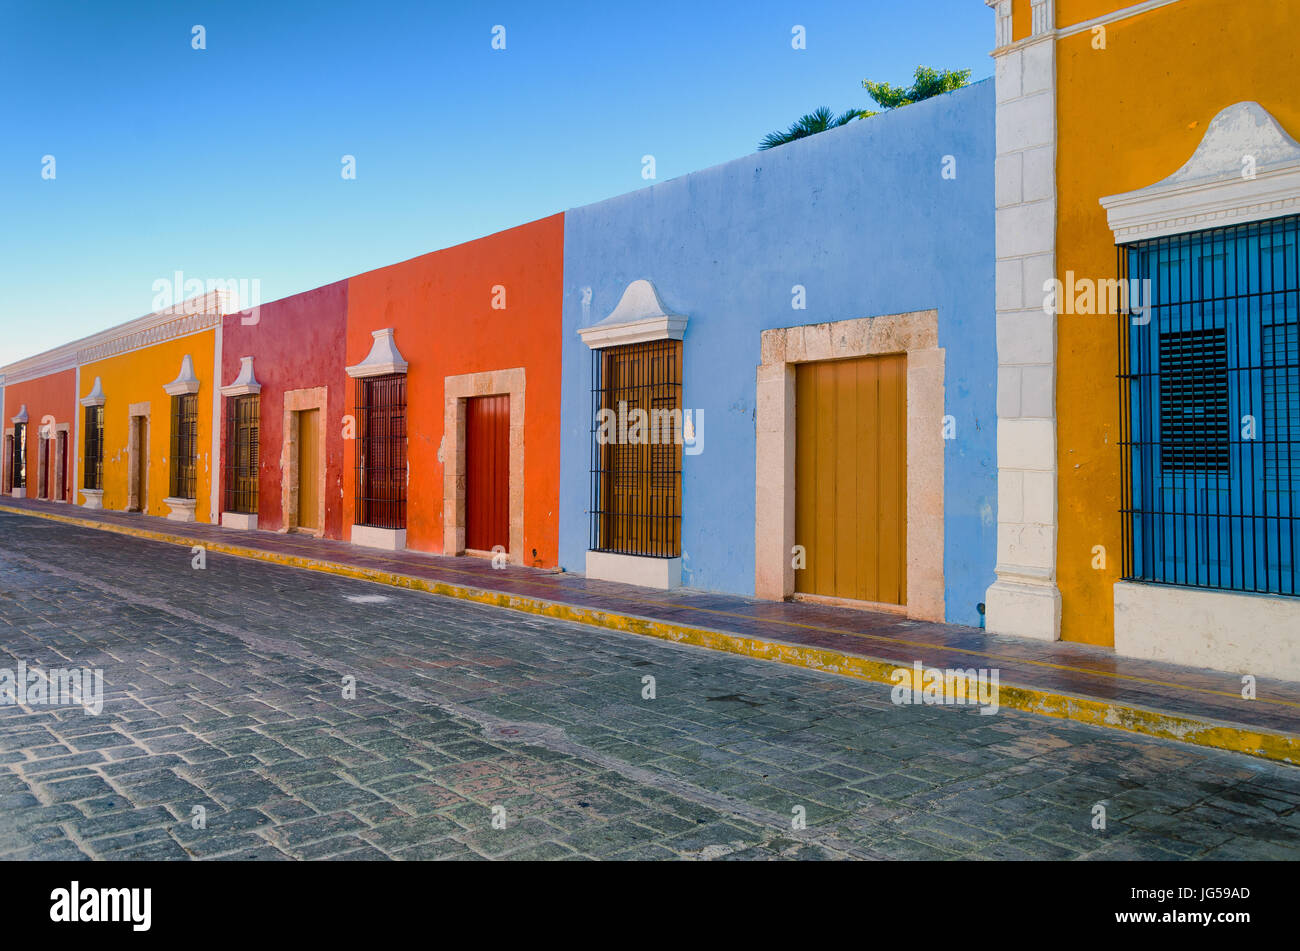 Couleurs lumineuses de maisons coloniales au centre-ville de Campeche, Mexique. Banque D'Images